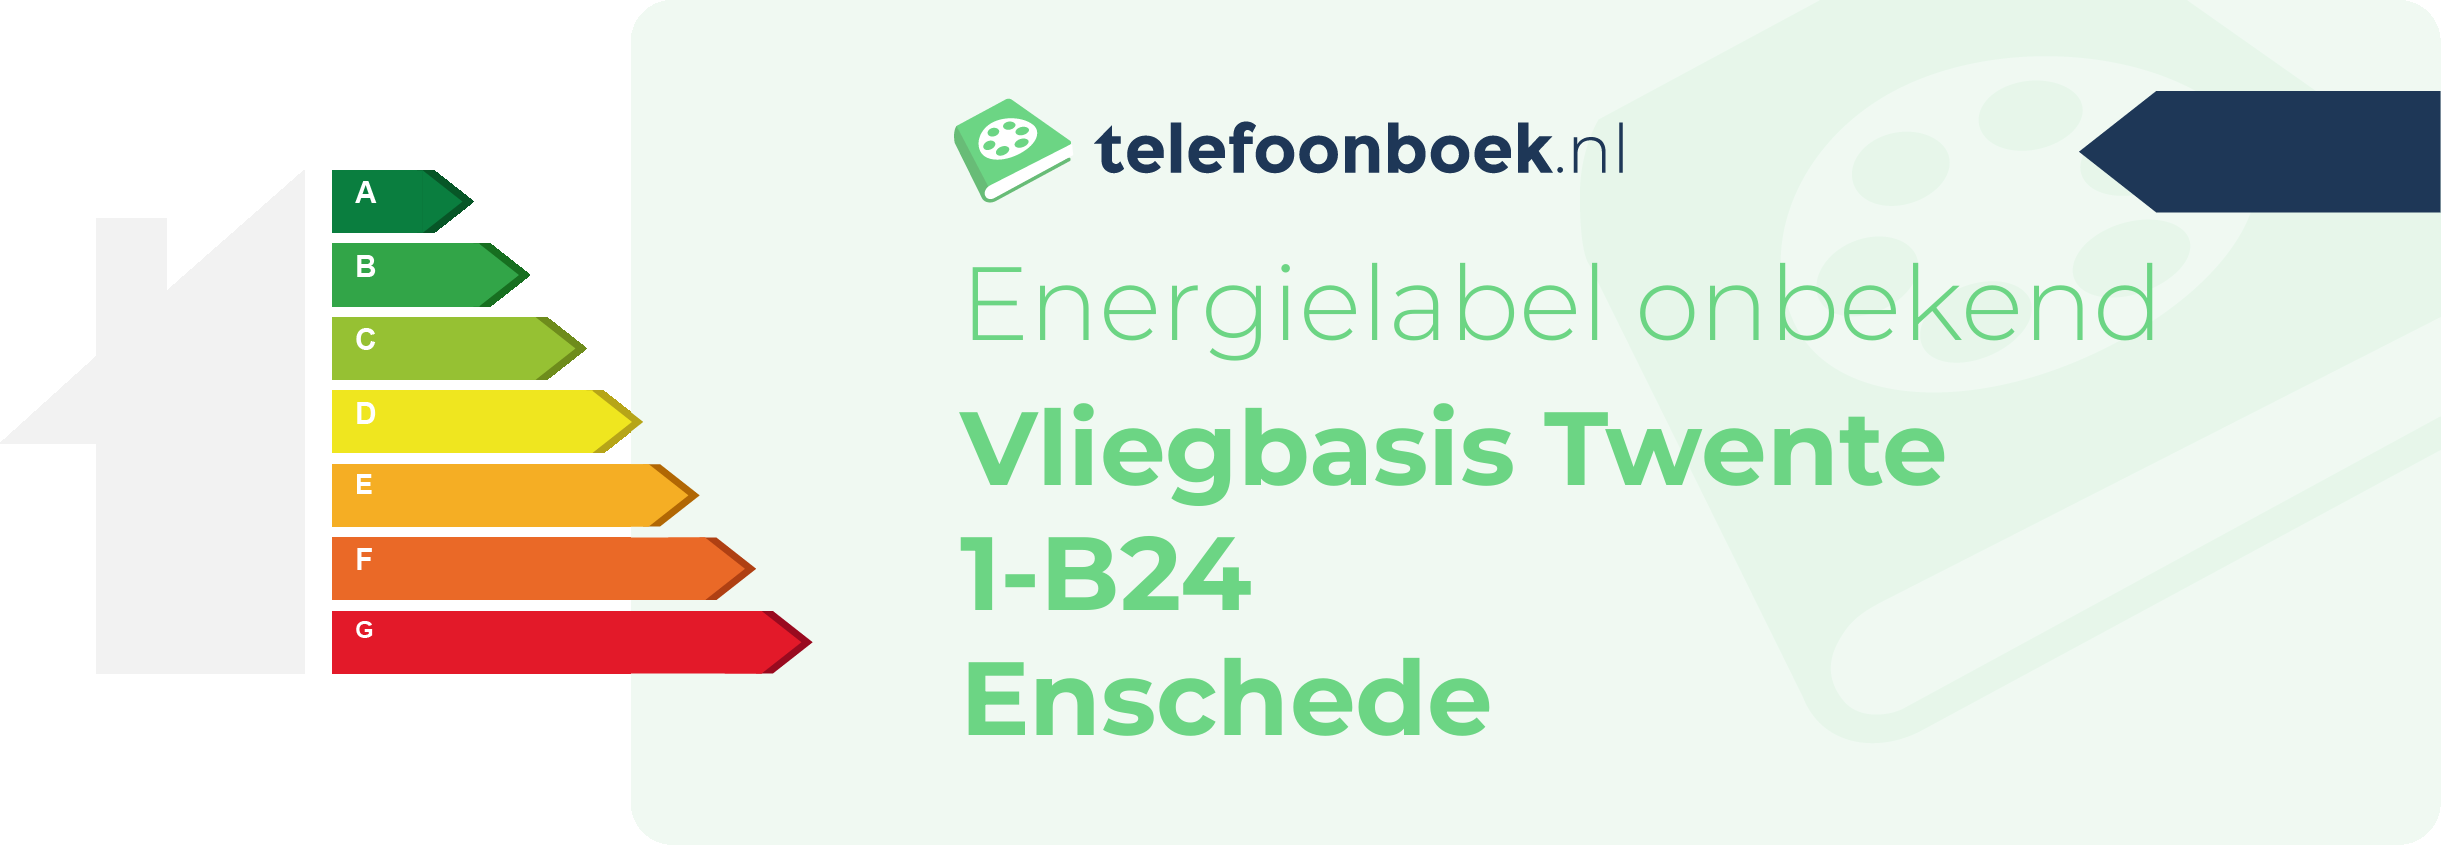 Energielabel Vliegbasis Twente 1-B24 Enschede